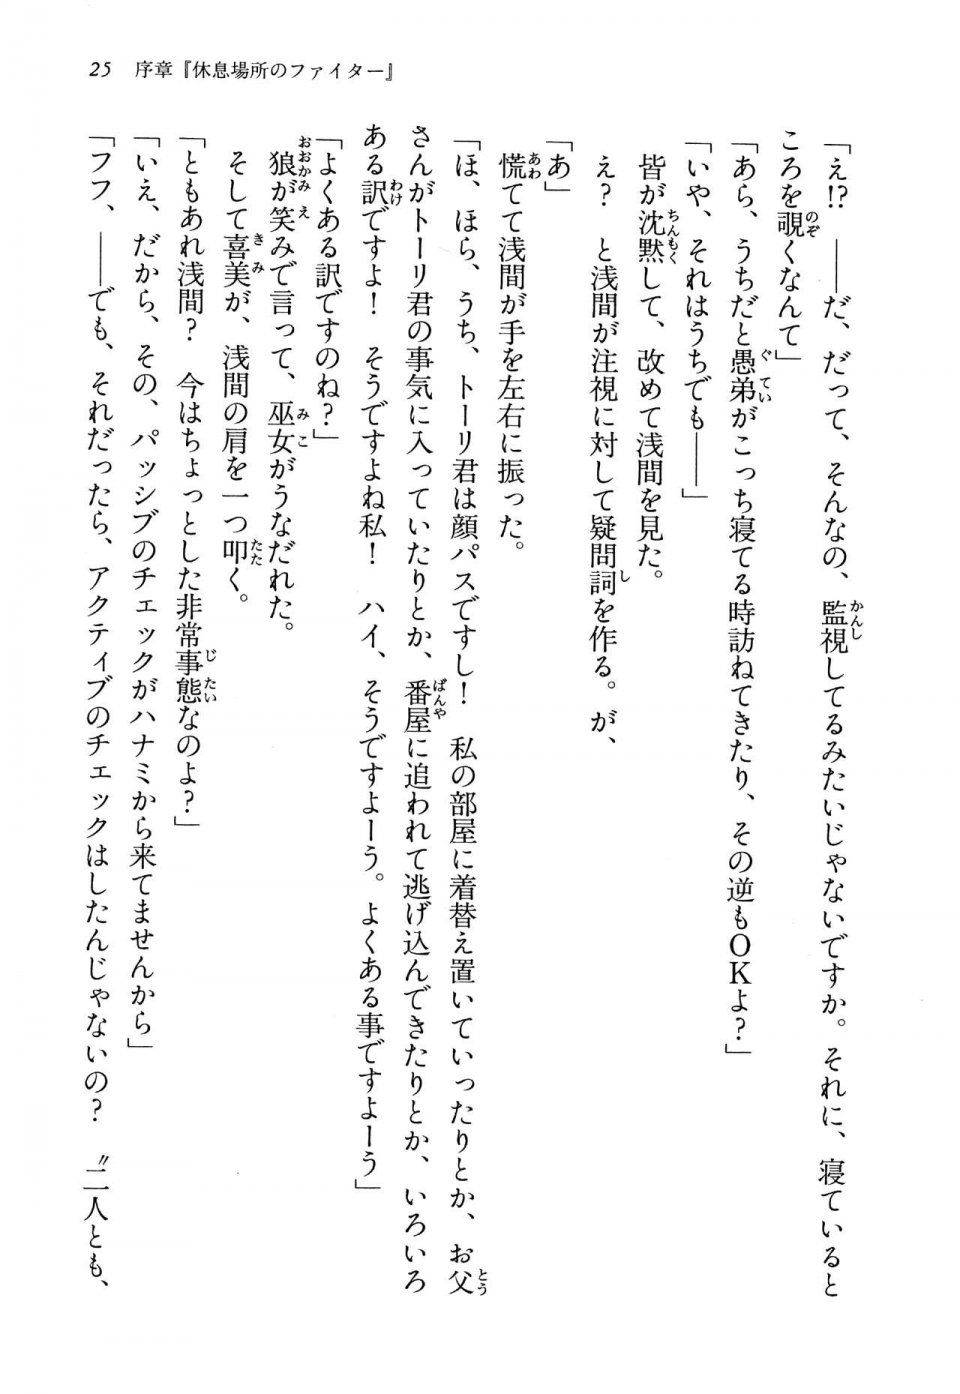 Kyoukai Senjou no Horizon LN Vol 13(6A) - Photo #25